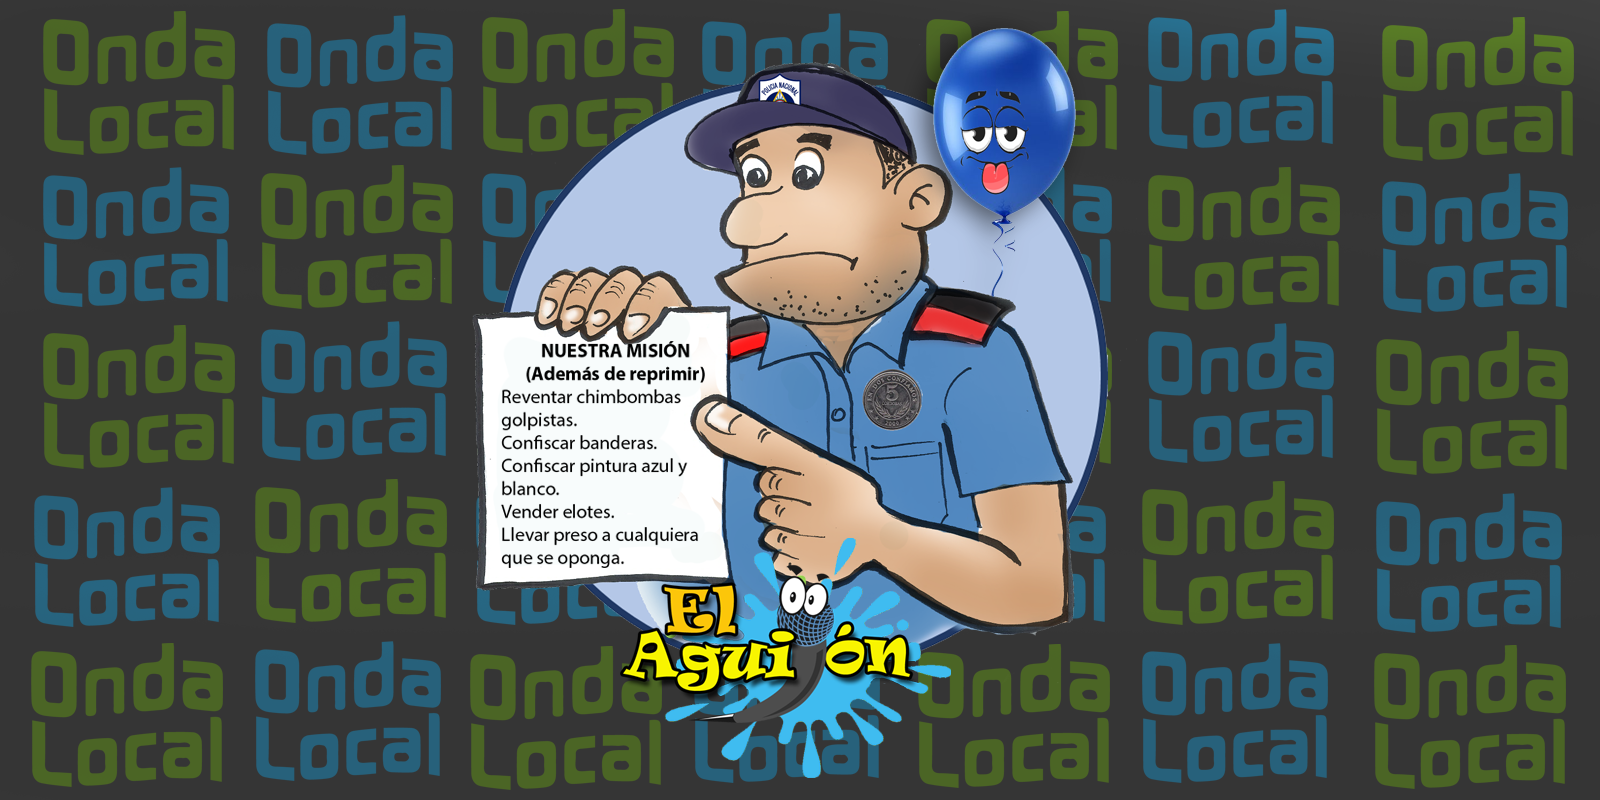 "Polisilla de Nicaragua cambia de oficio"